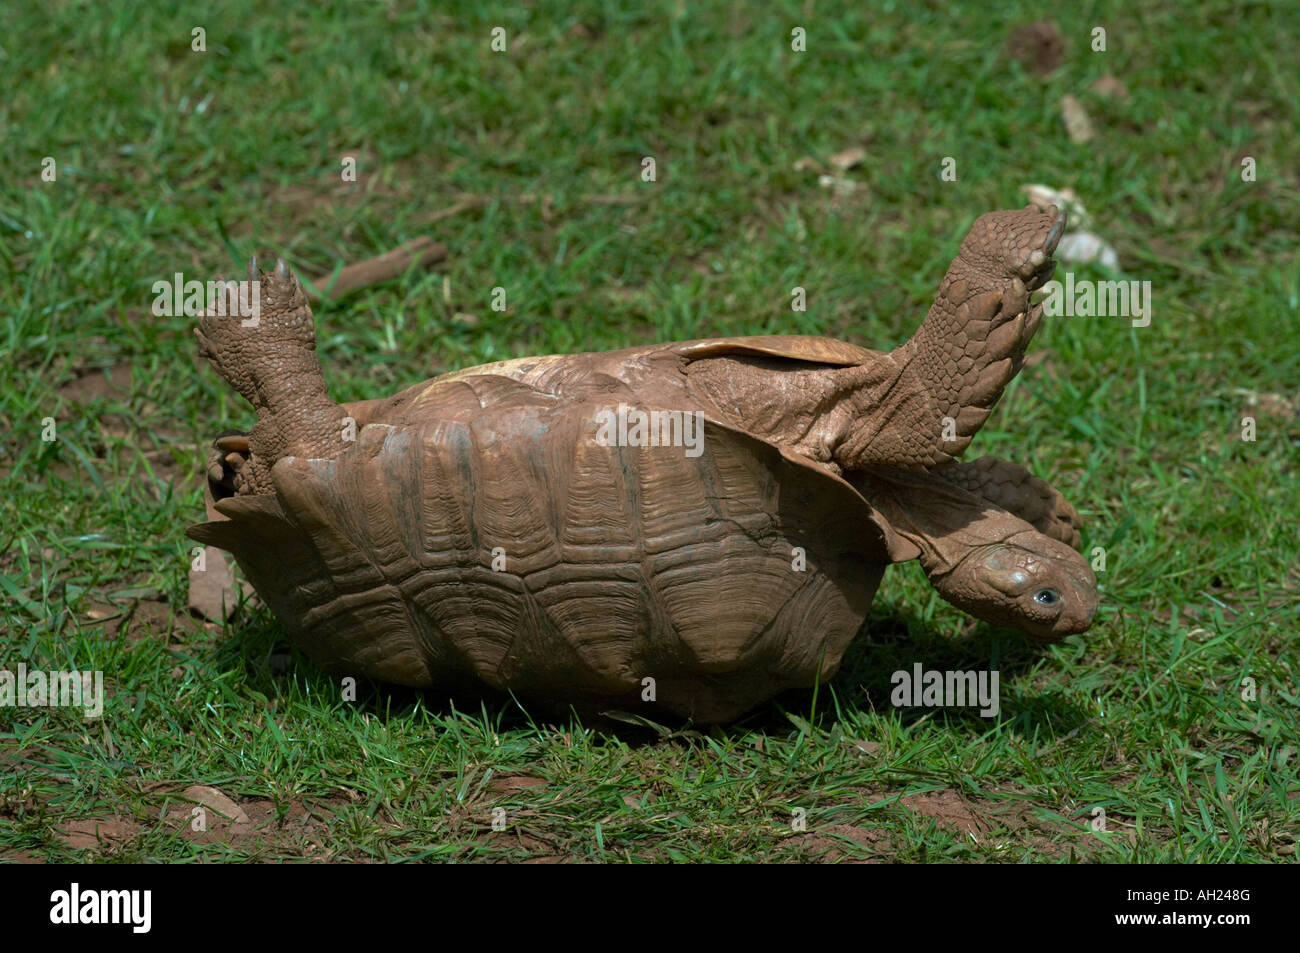 testudinidae-tortoise-upside-down-on-its-back-AH248G.jpg